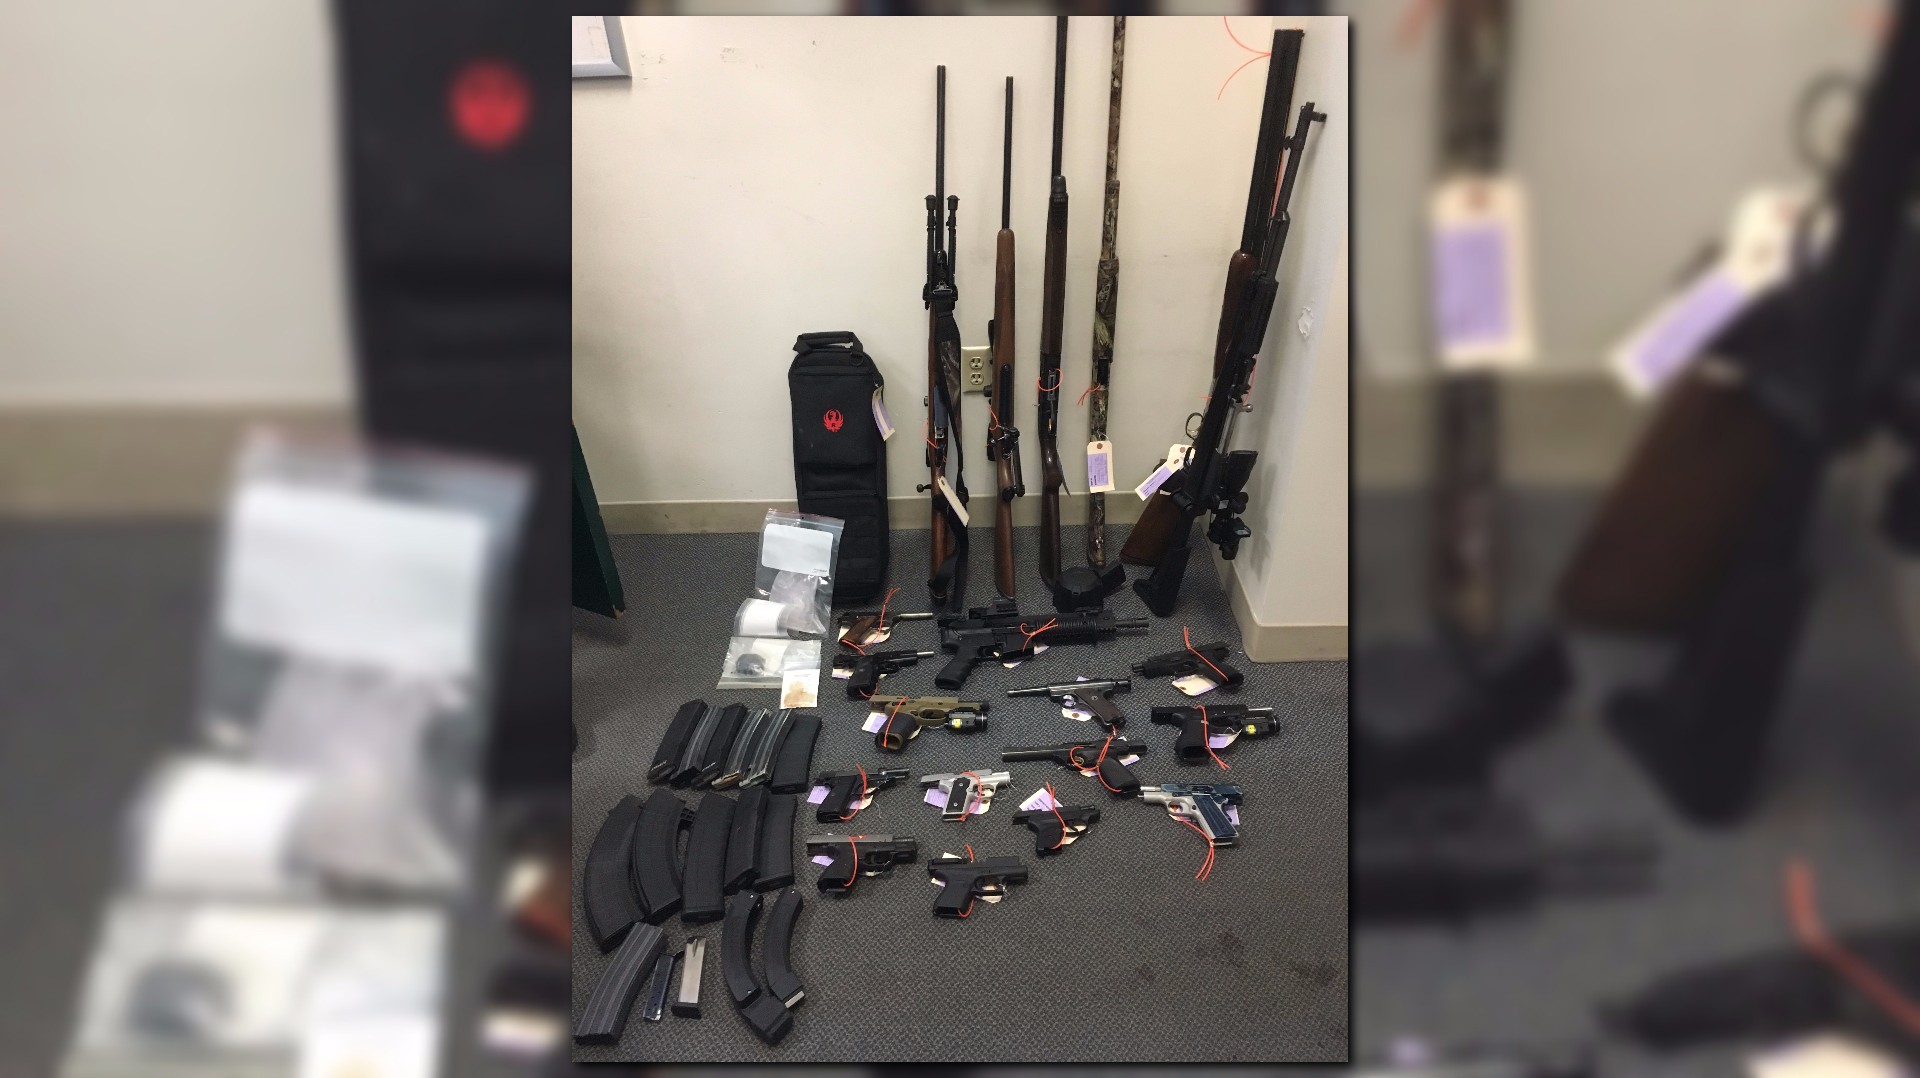 21 guns seized at Tigard home